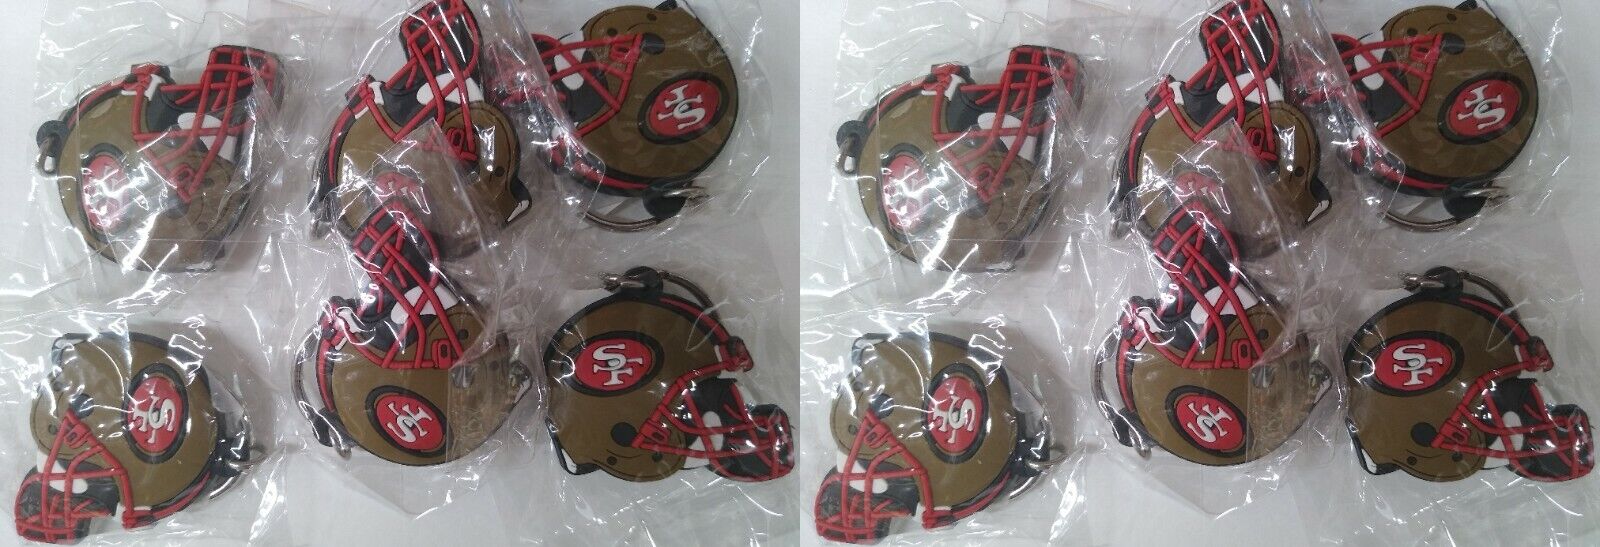 Lot of 12 NFL OFFICIAL Licensed San Francisco 49ers Team Helmet Keychain Keyring Без бренда